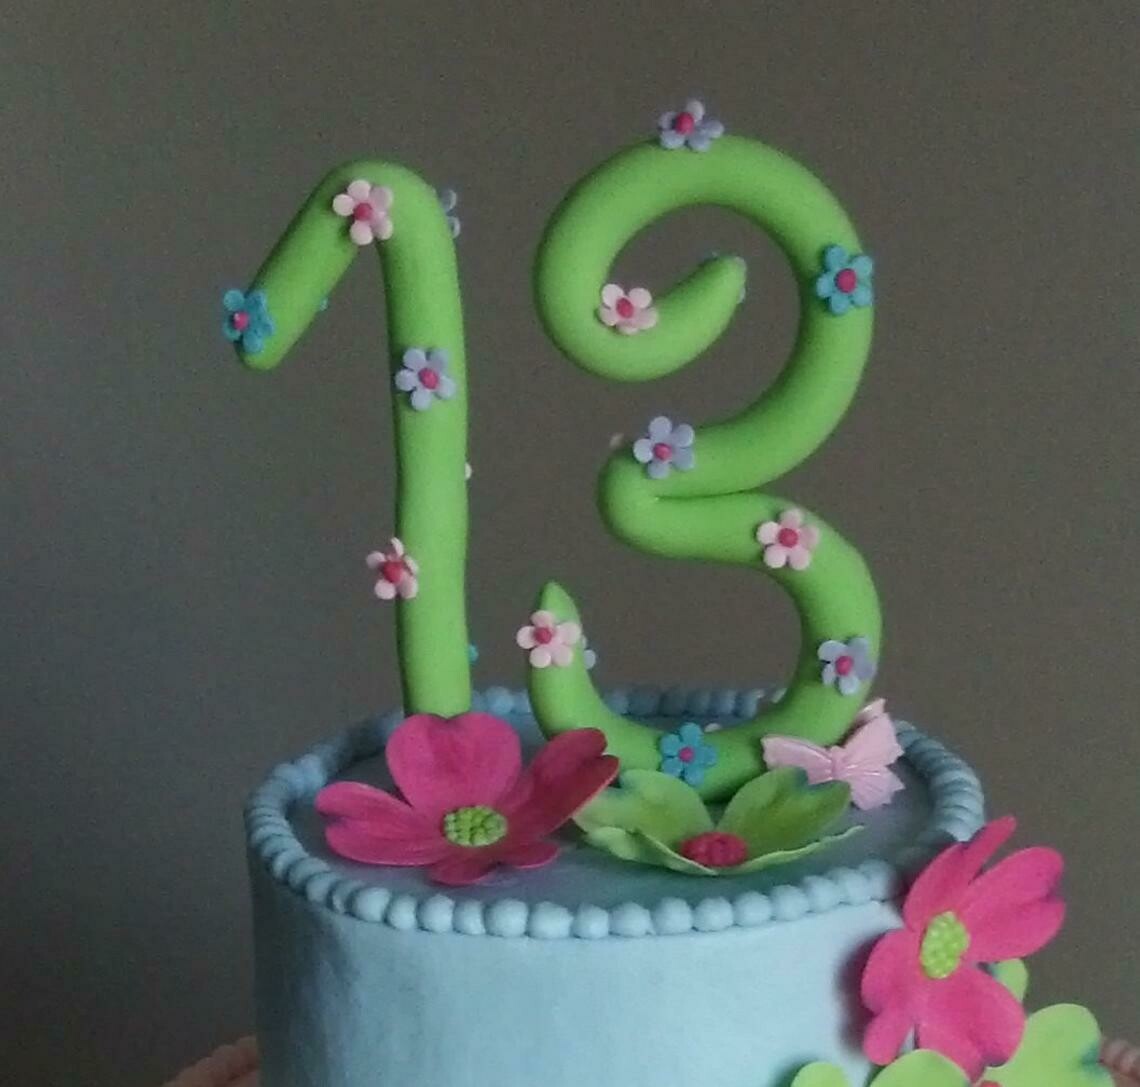 Handmade Fondant Number Cake Topper, Birthday Cake Decorations, Milestone Birthday, Number Cake Topper